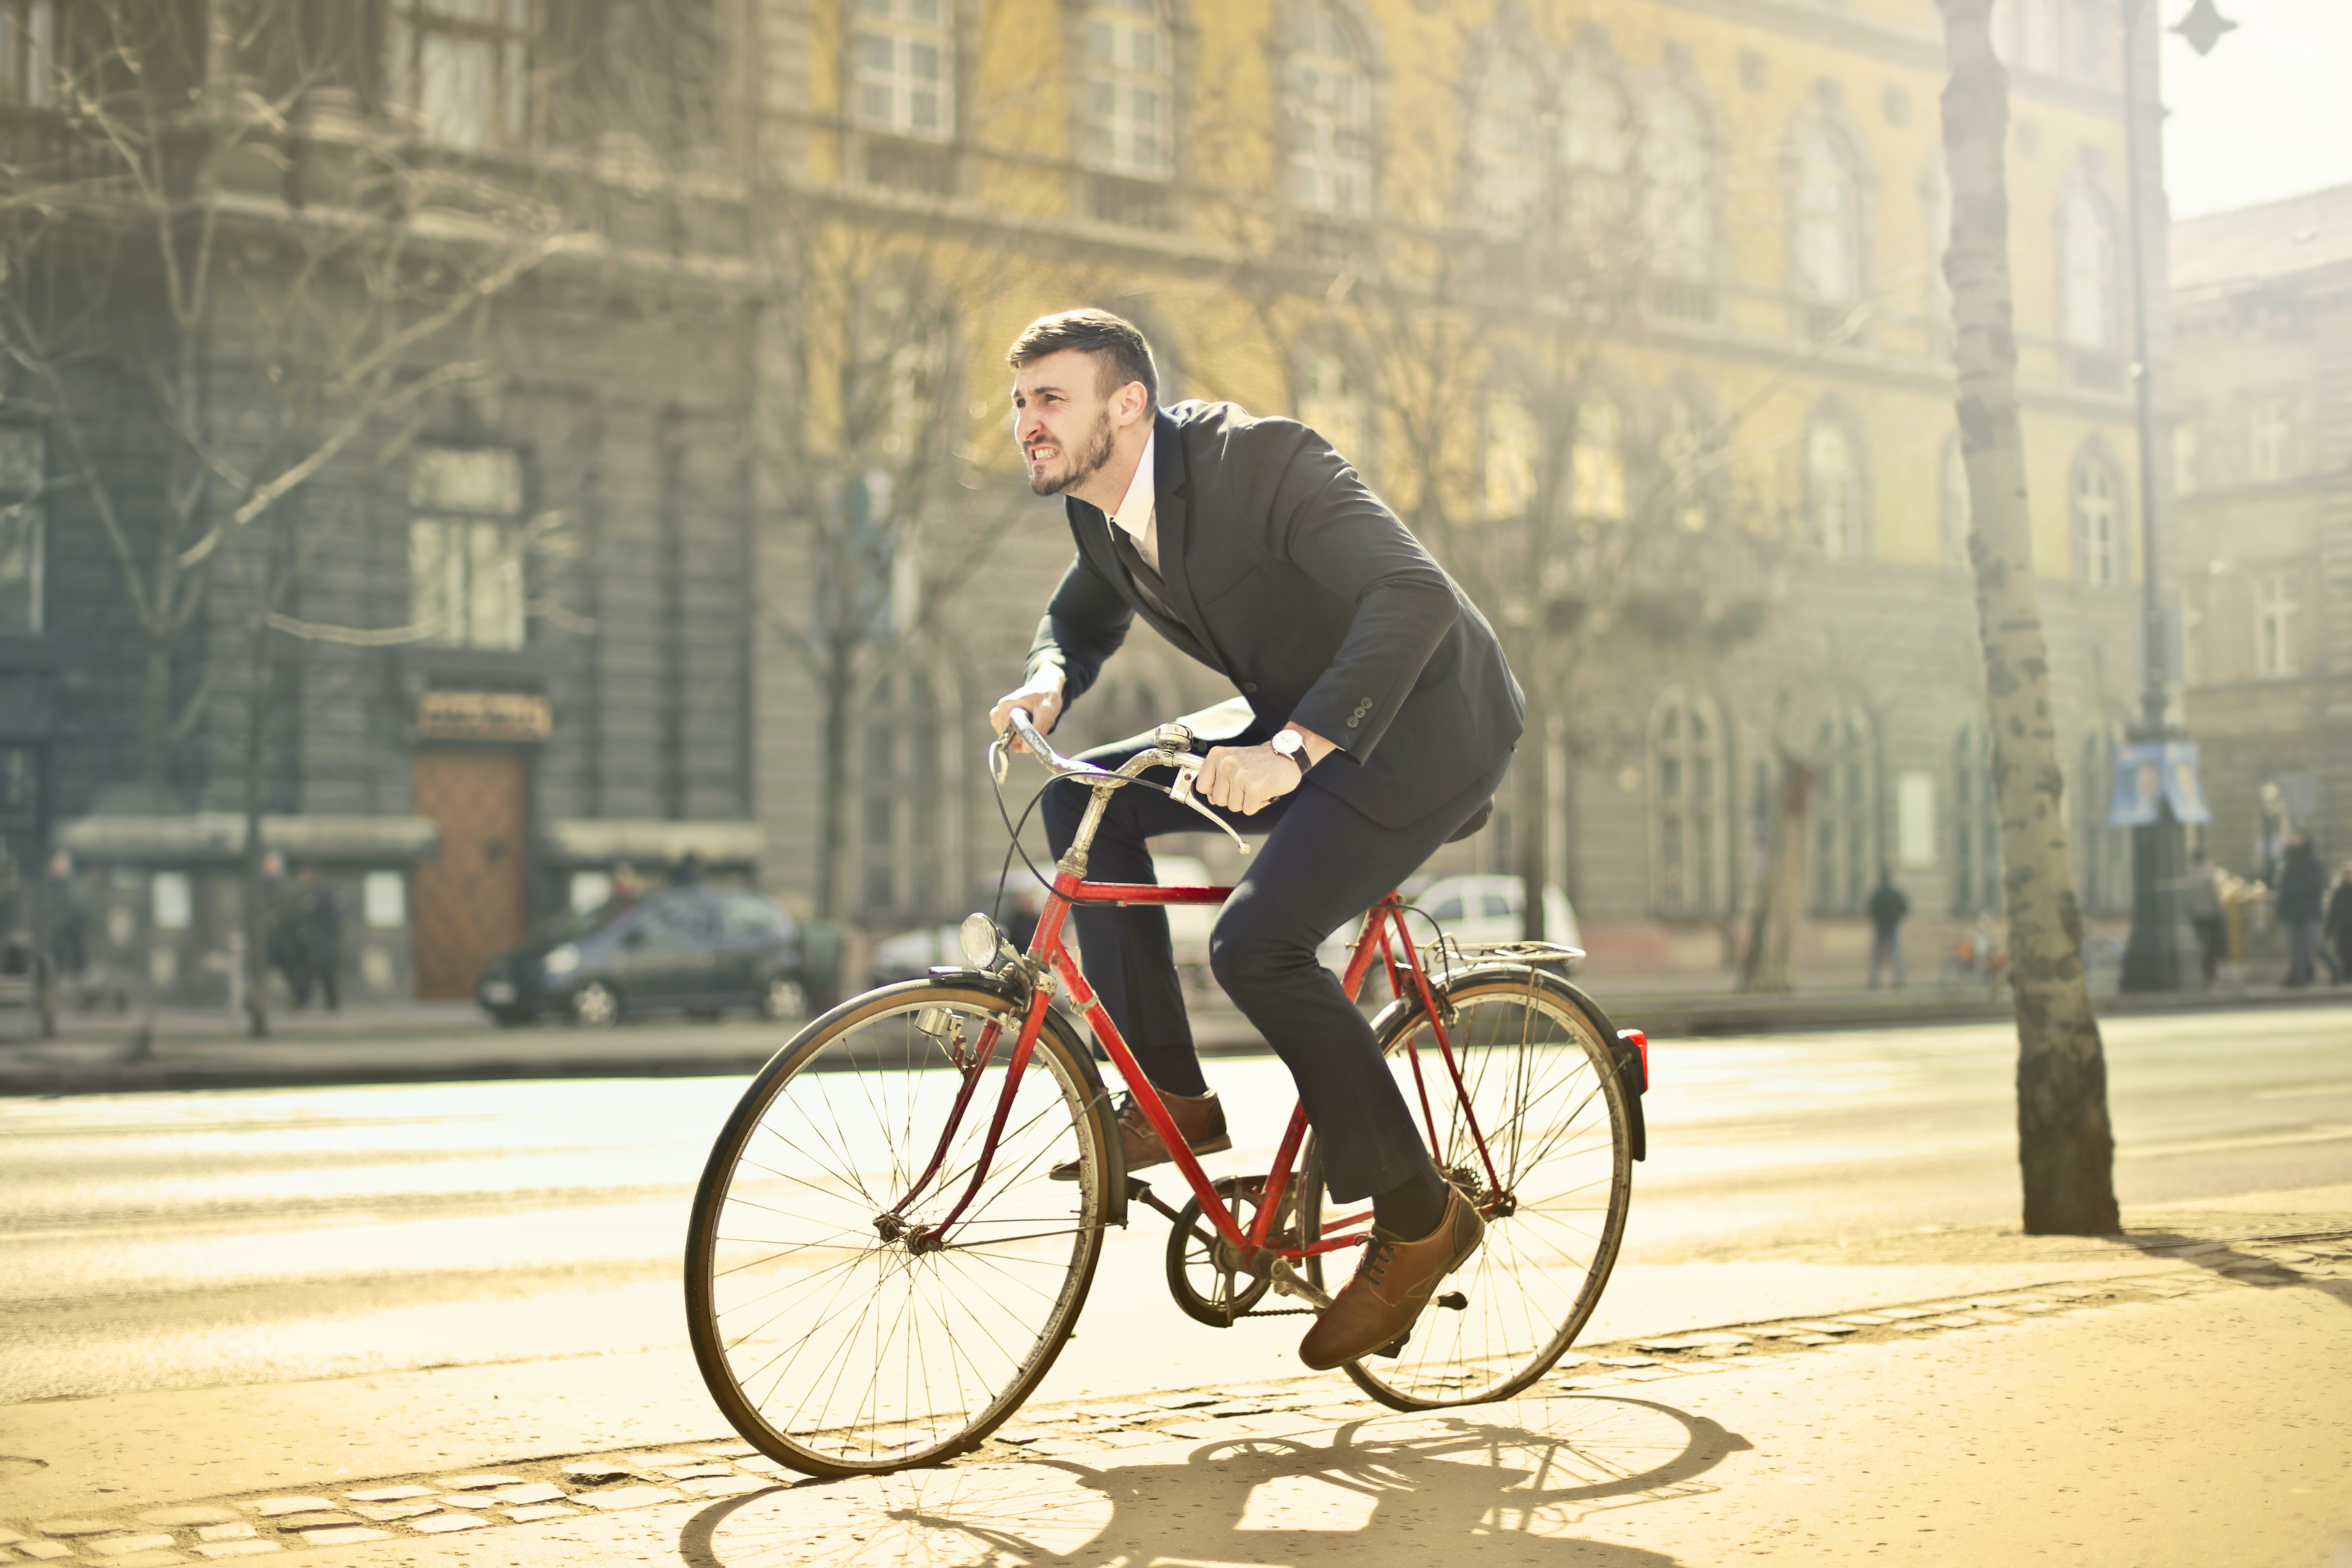 Ciclista vestido de terno e gravata, pedalando no meio da cidade